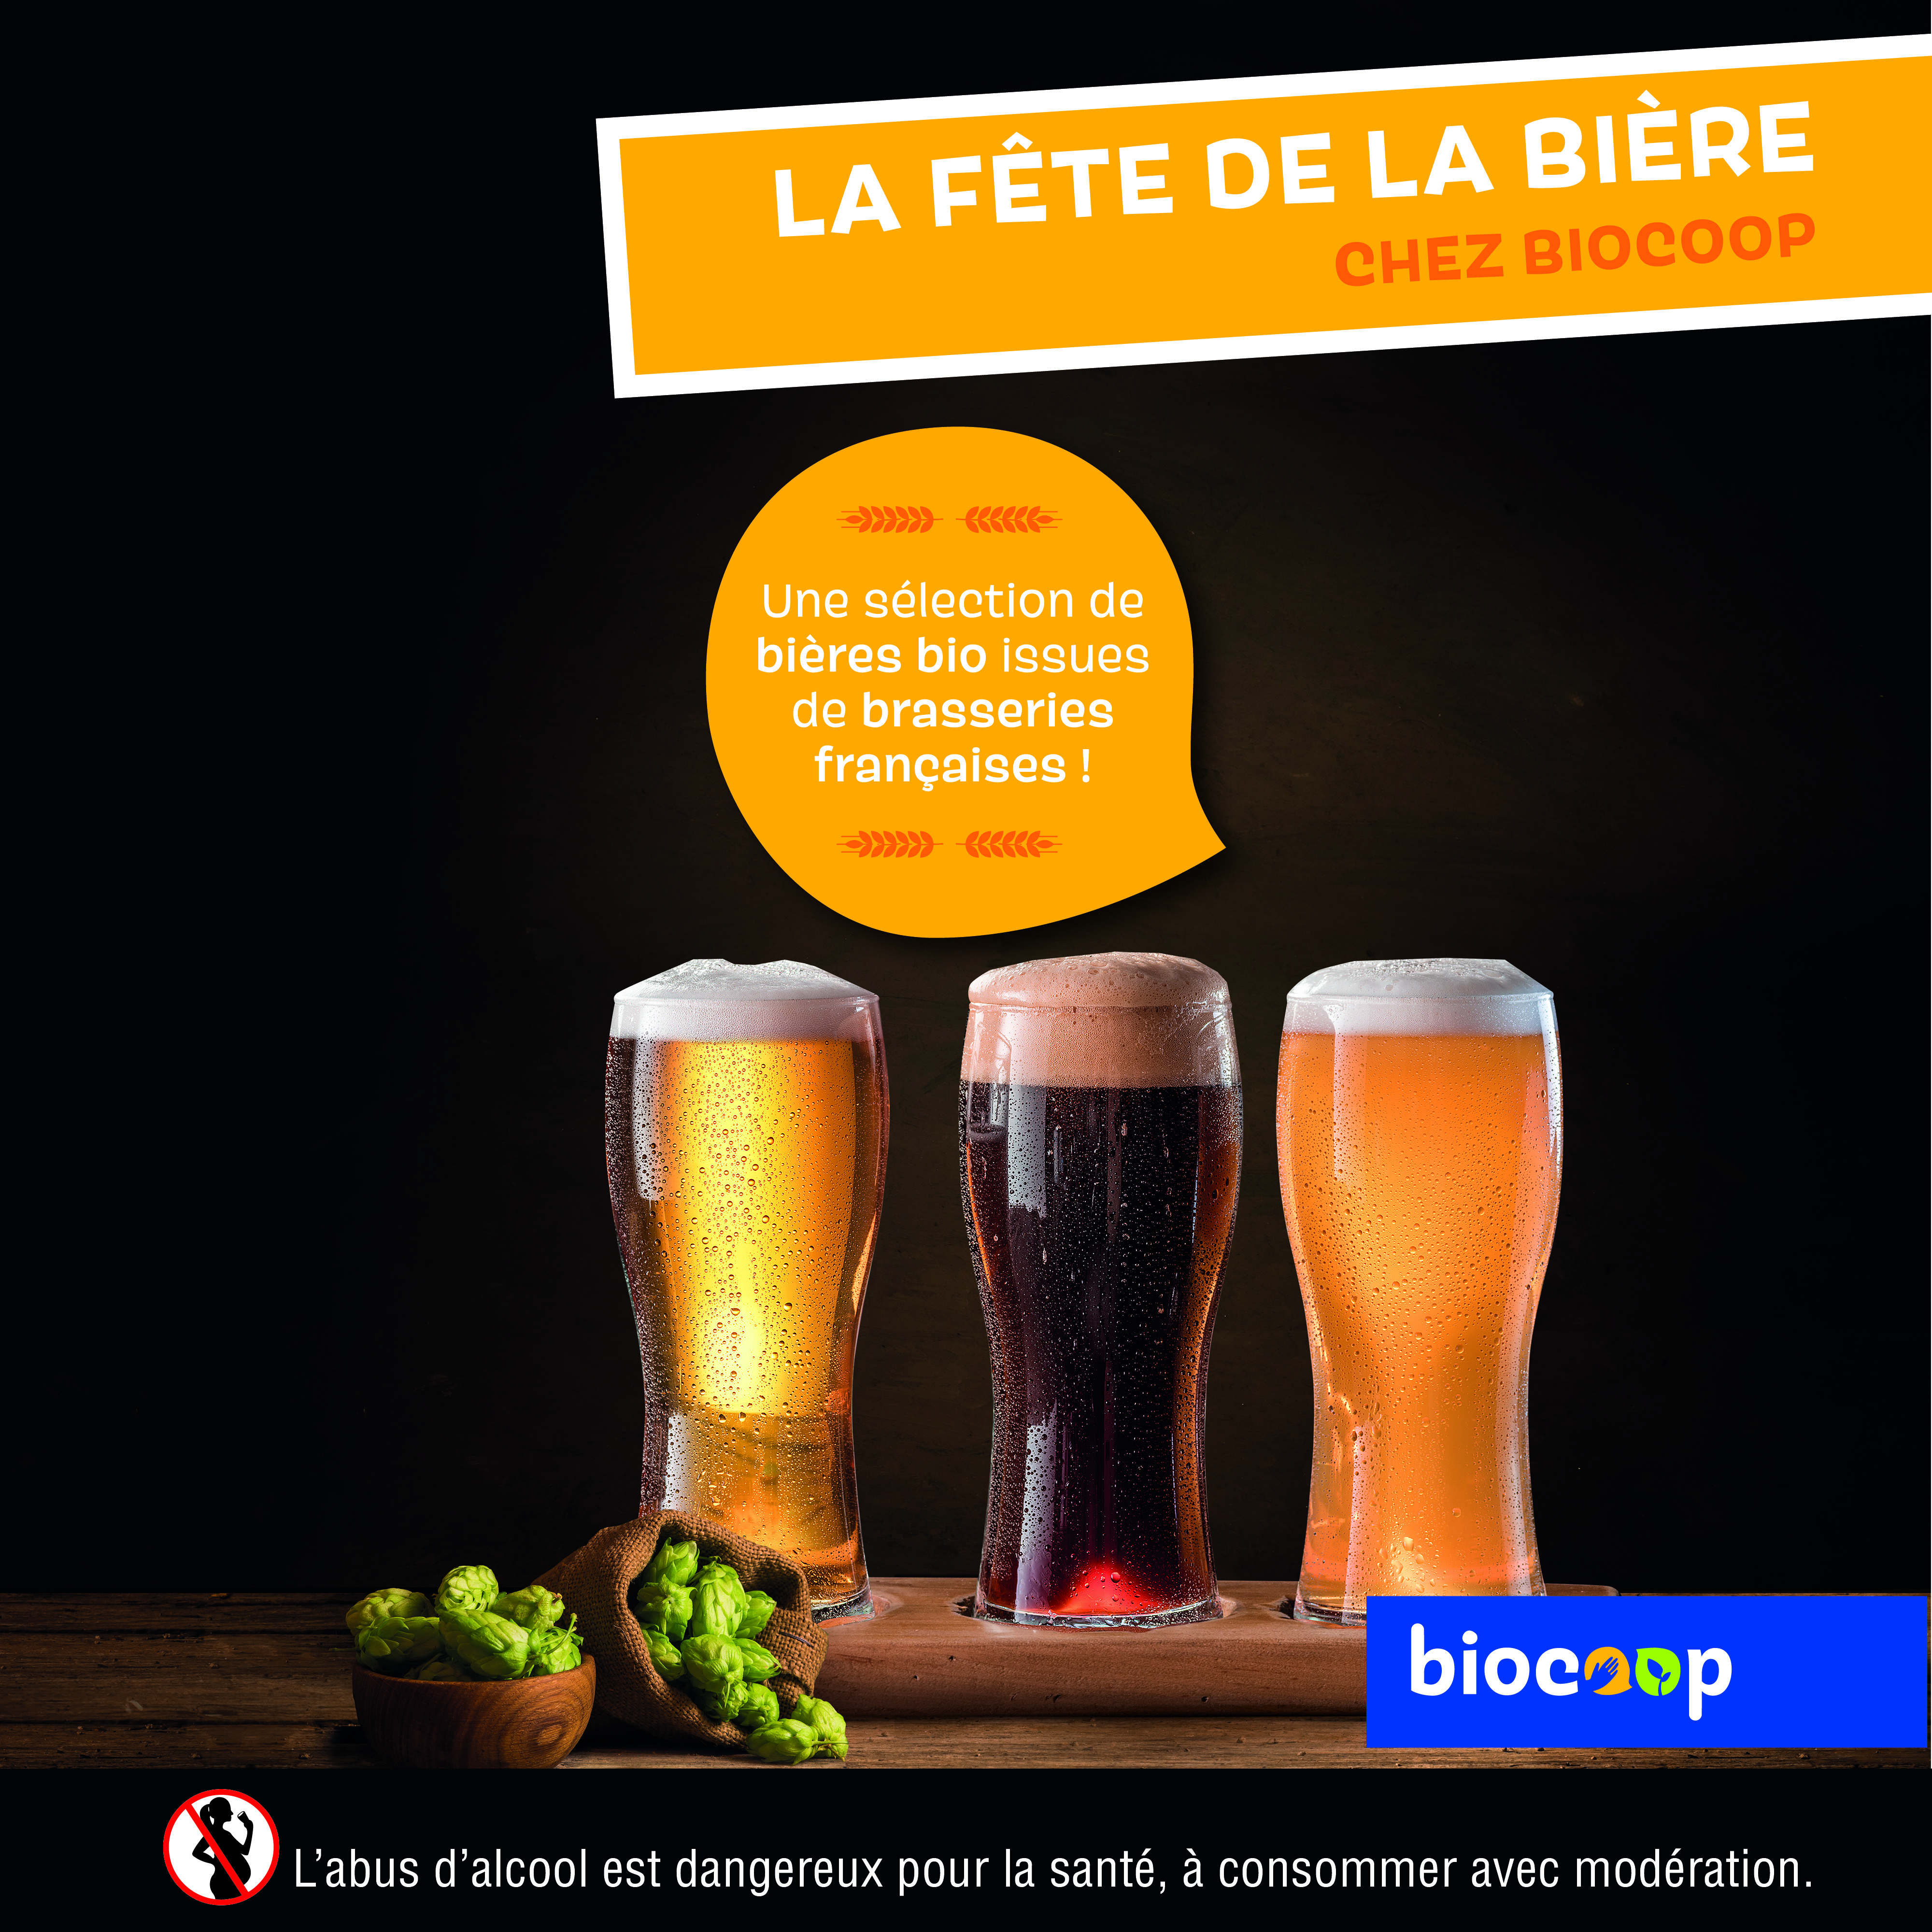 C’est la Fête de la Bière chez Biocoop !